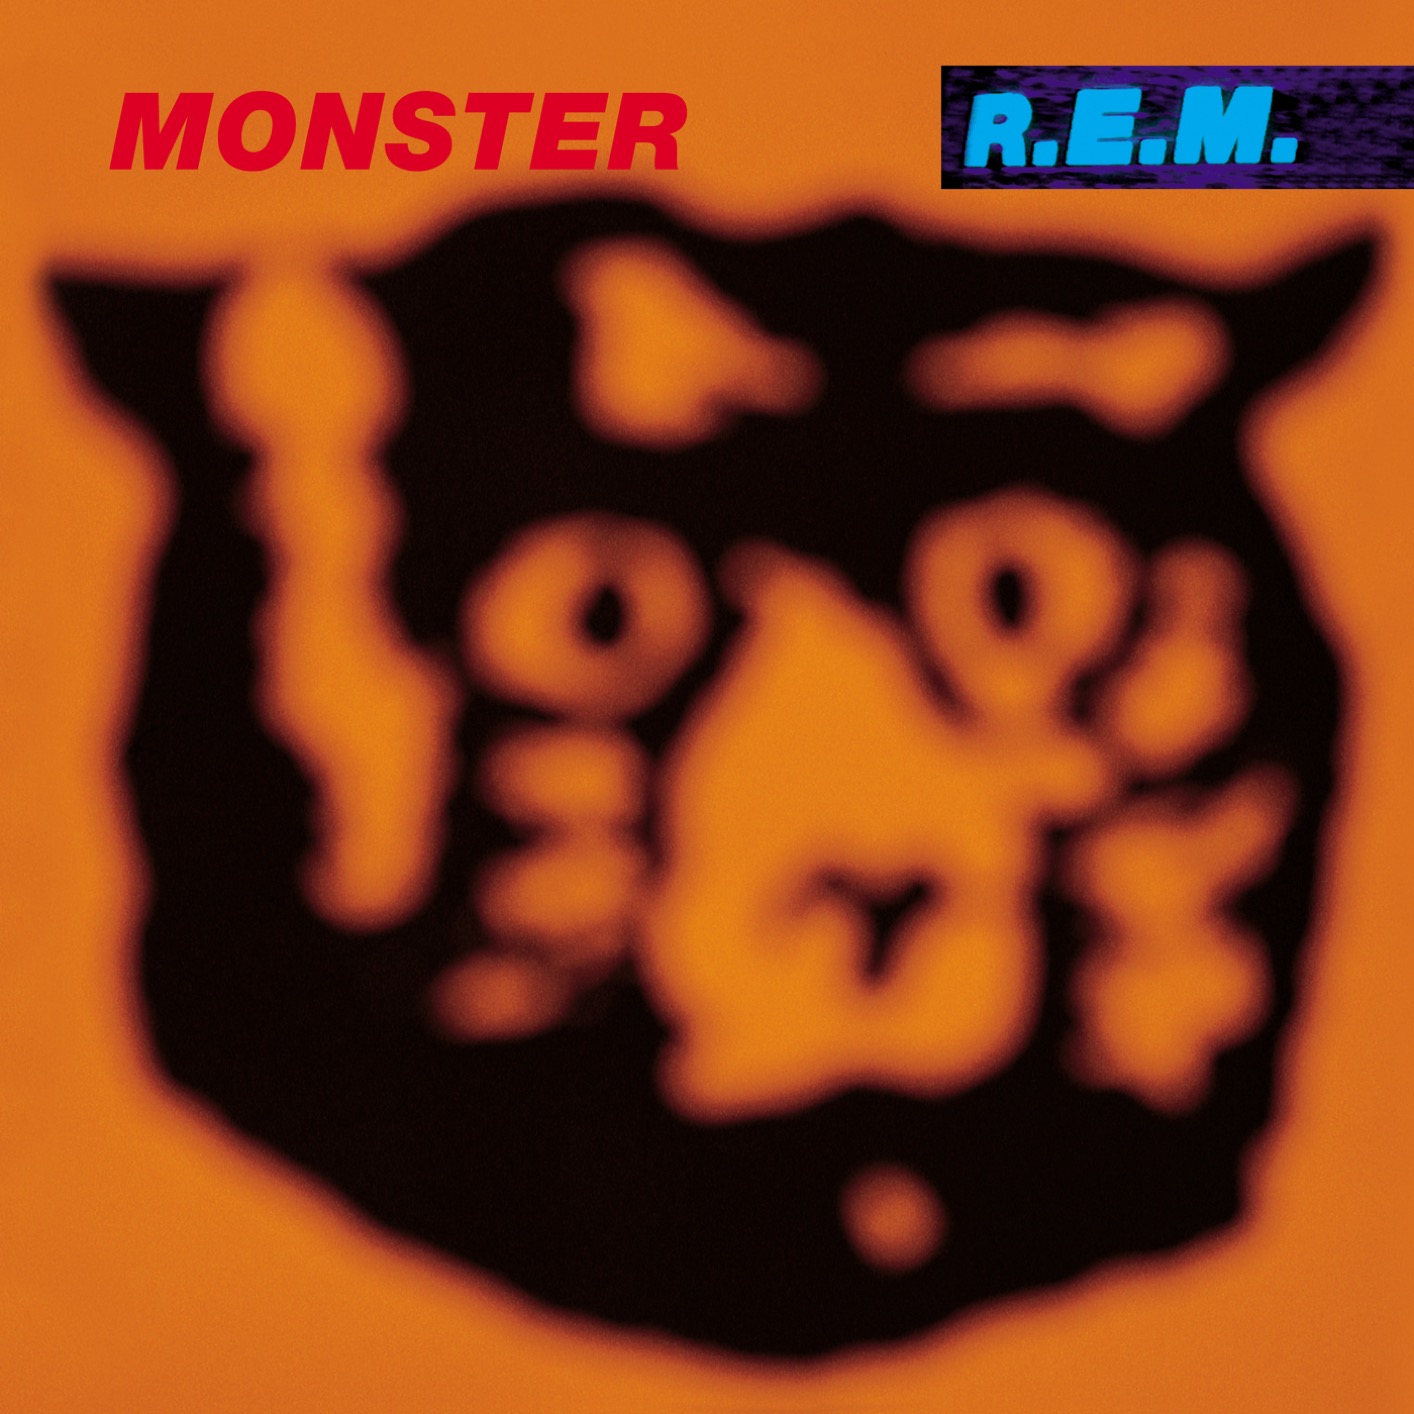 R.E.M. – Monster (Remastered) (1994/2019) [FLAC 24bit/96kHz]